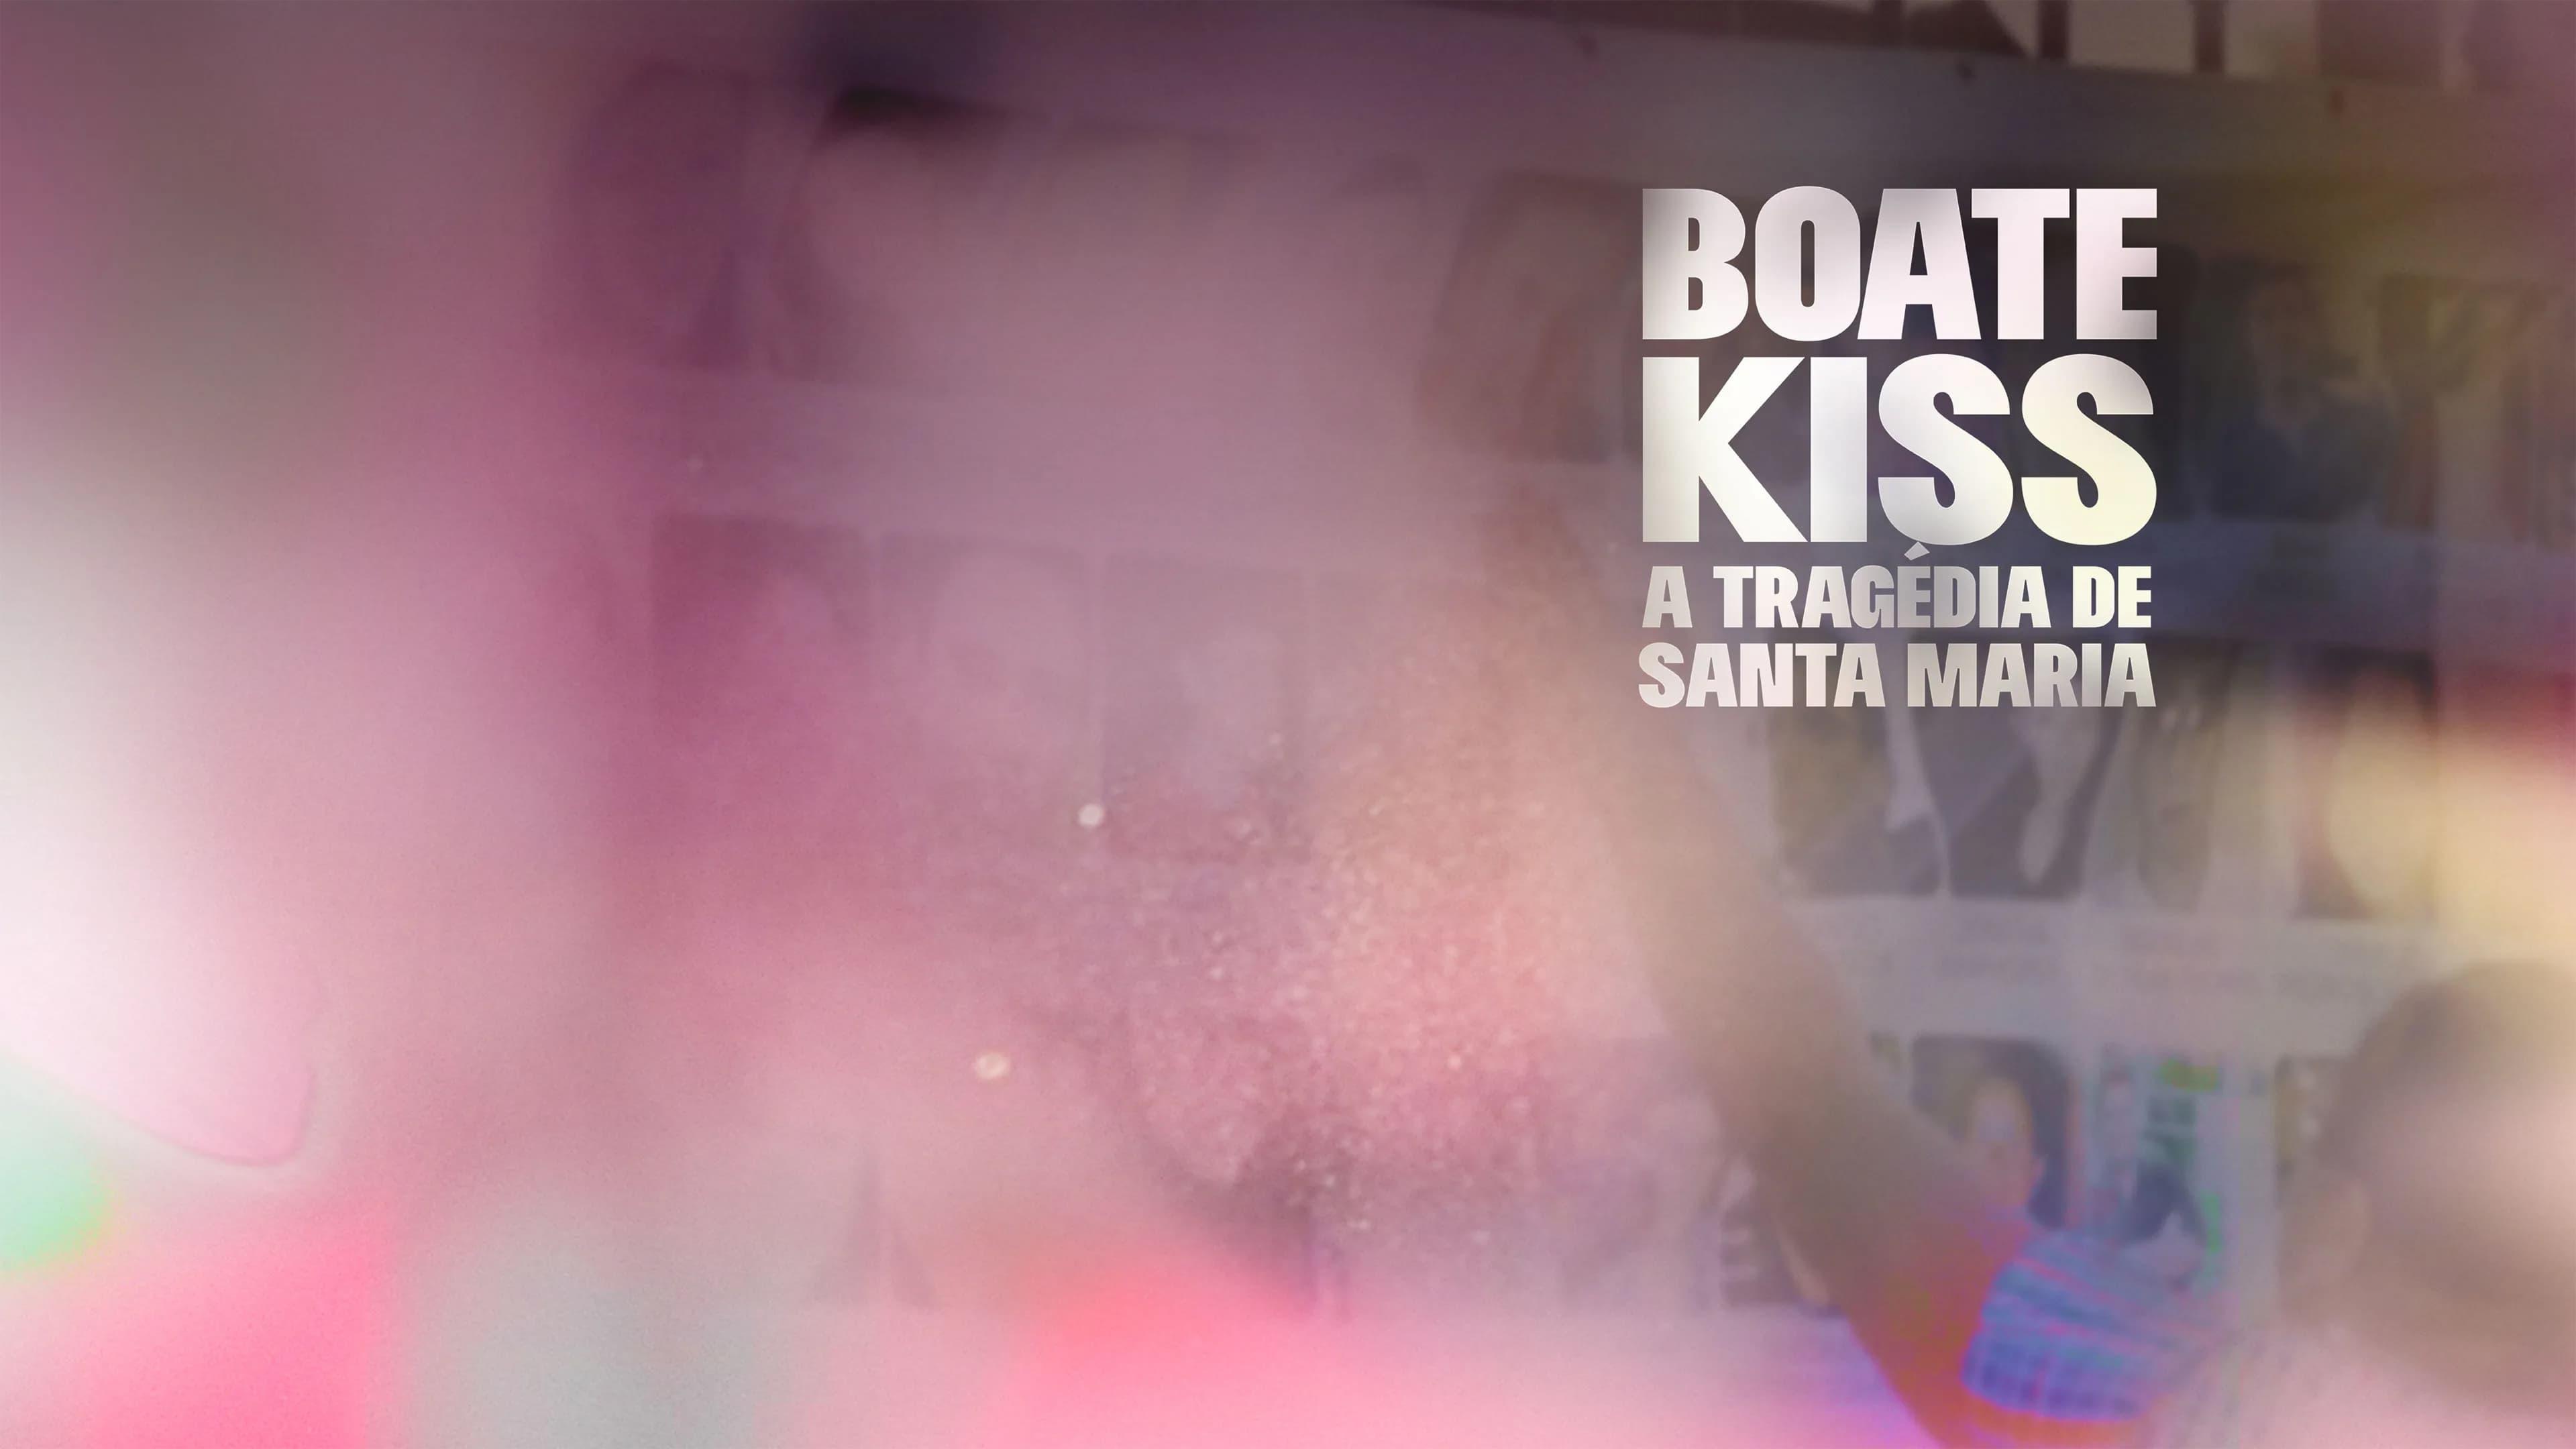 Boate Kiss: A Tragédia de Santa Maria backdrop